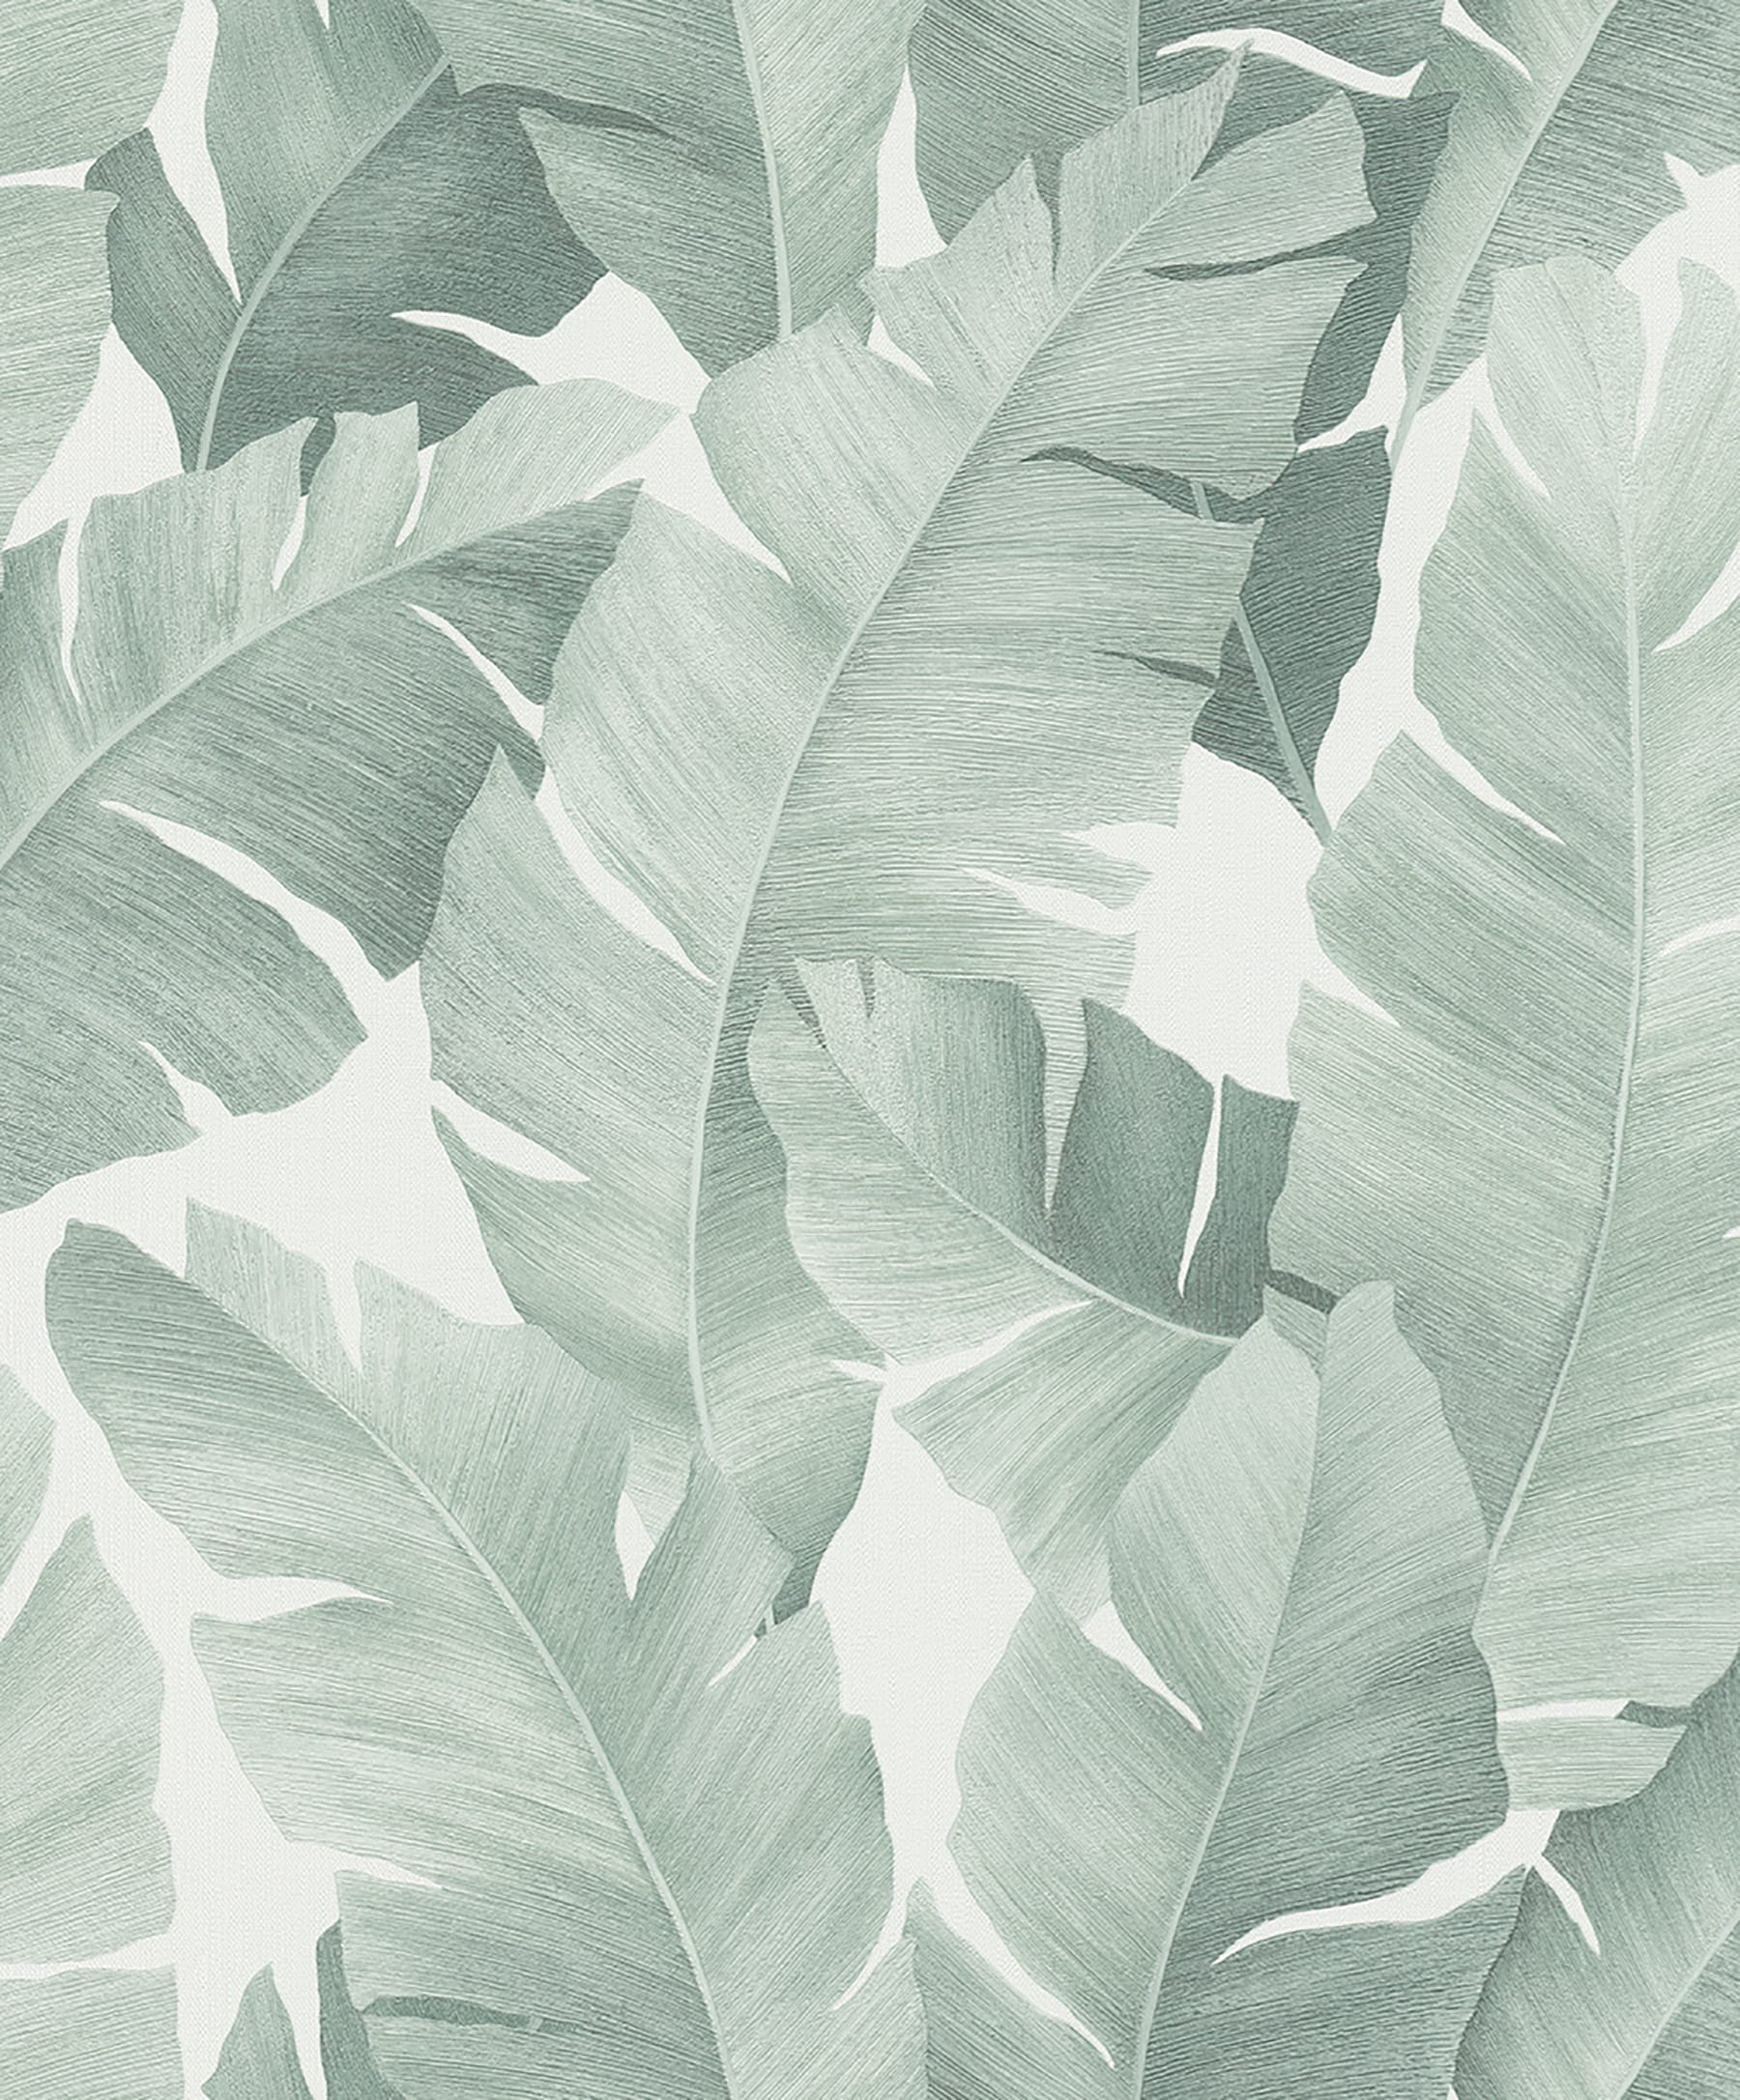 Aesthetic Leaves Wallpaper by kitdominic12 on DeviantArt